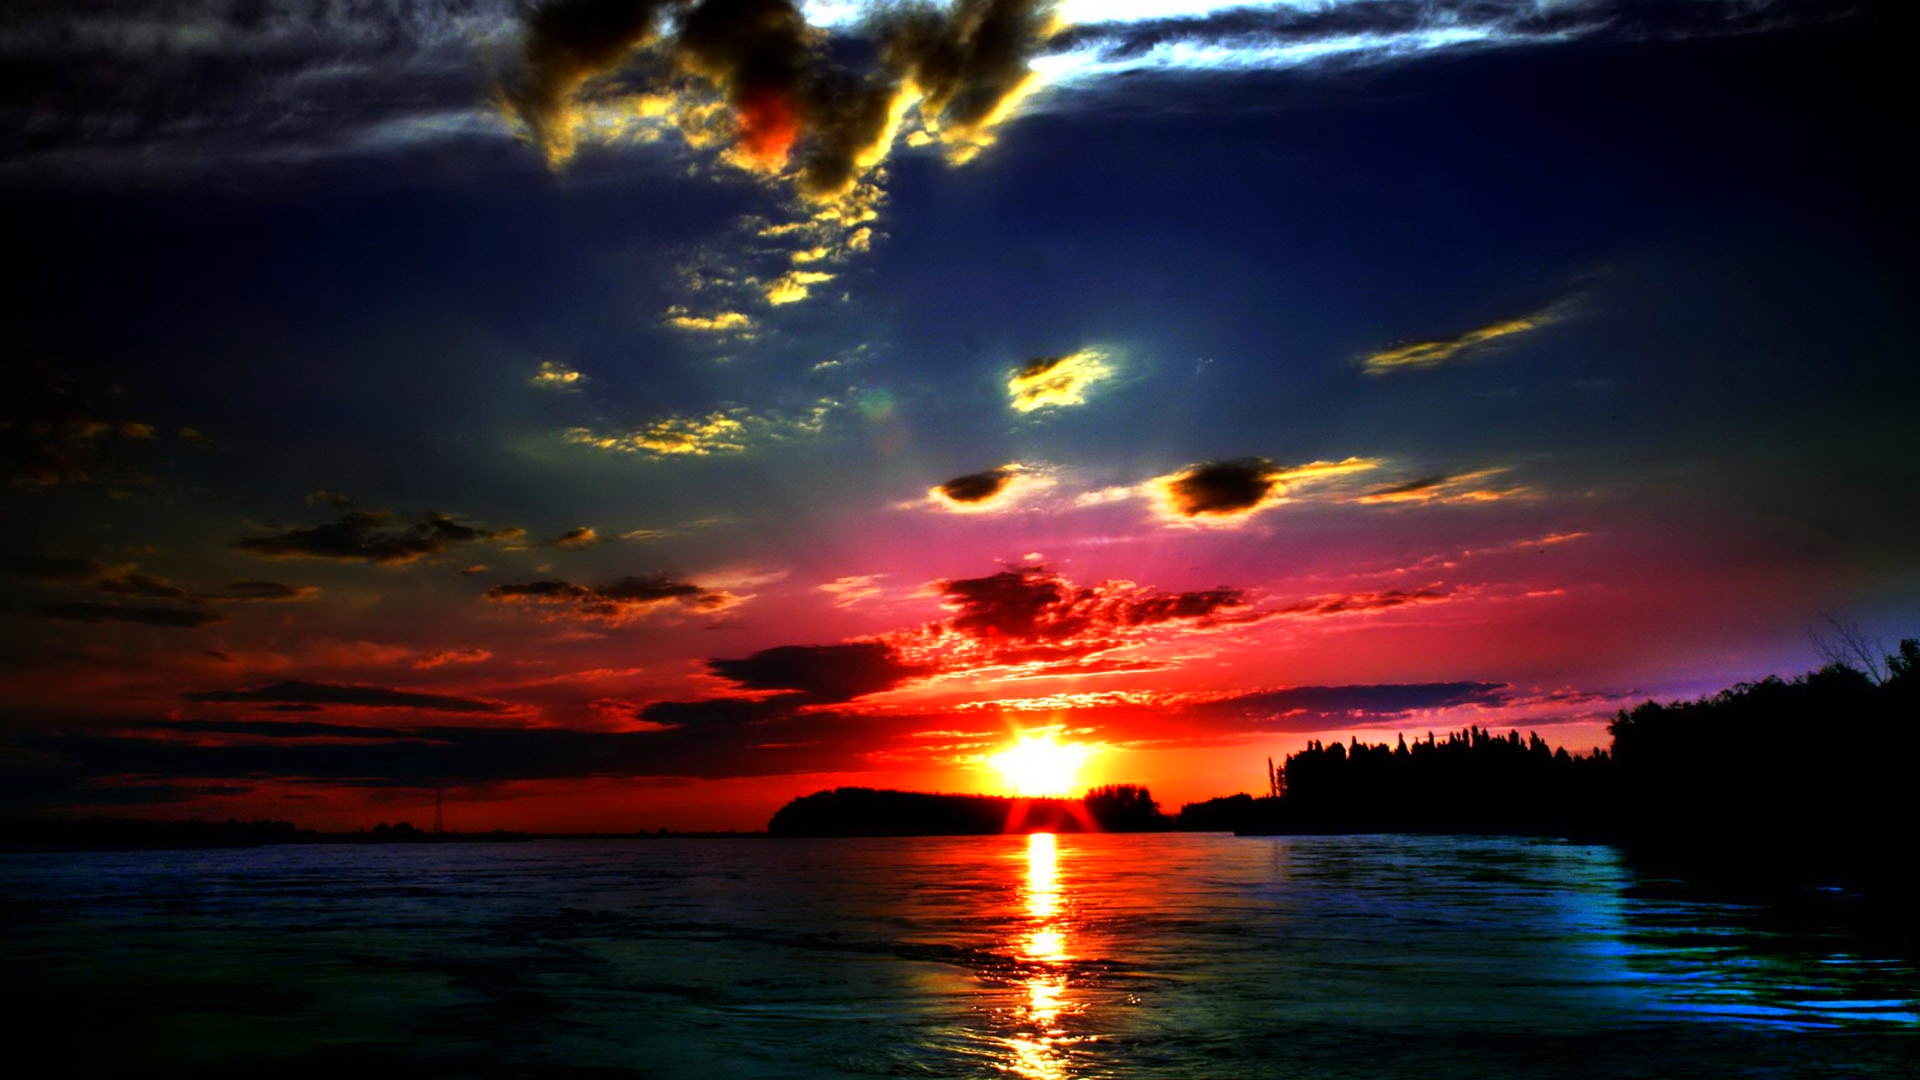 A stunning sunset HD wallpaper 4k background